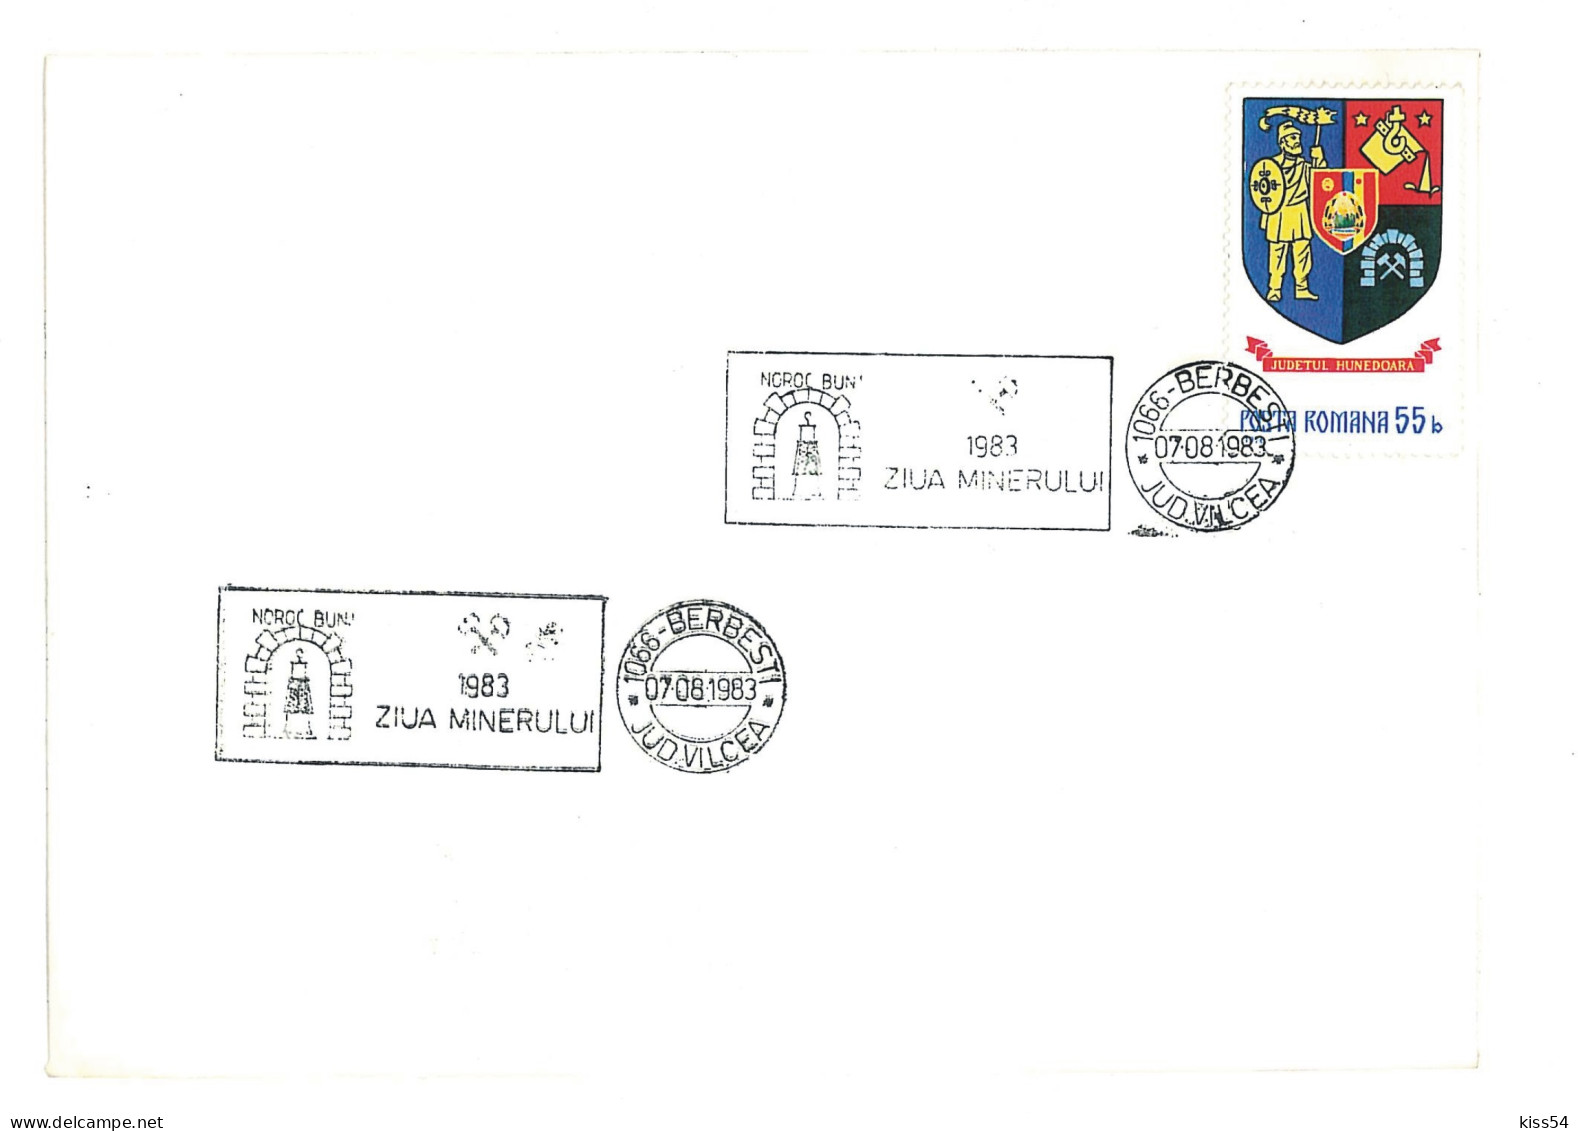 COV 35 - 2056, MINER Day, Romania - Cover - Used - 1983 - Storia Postale